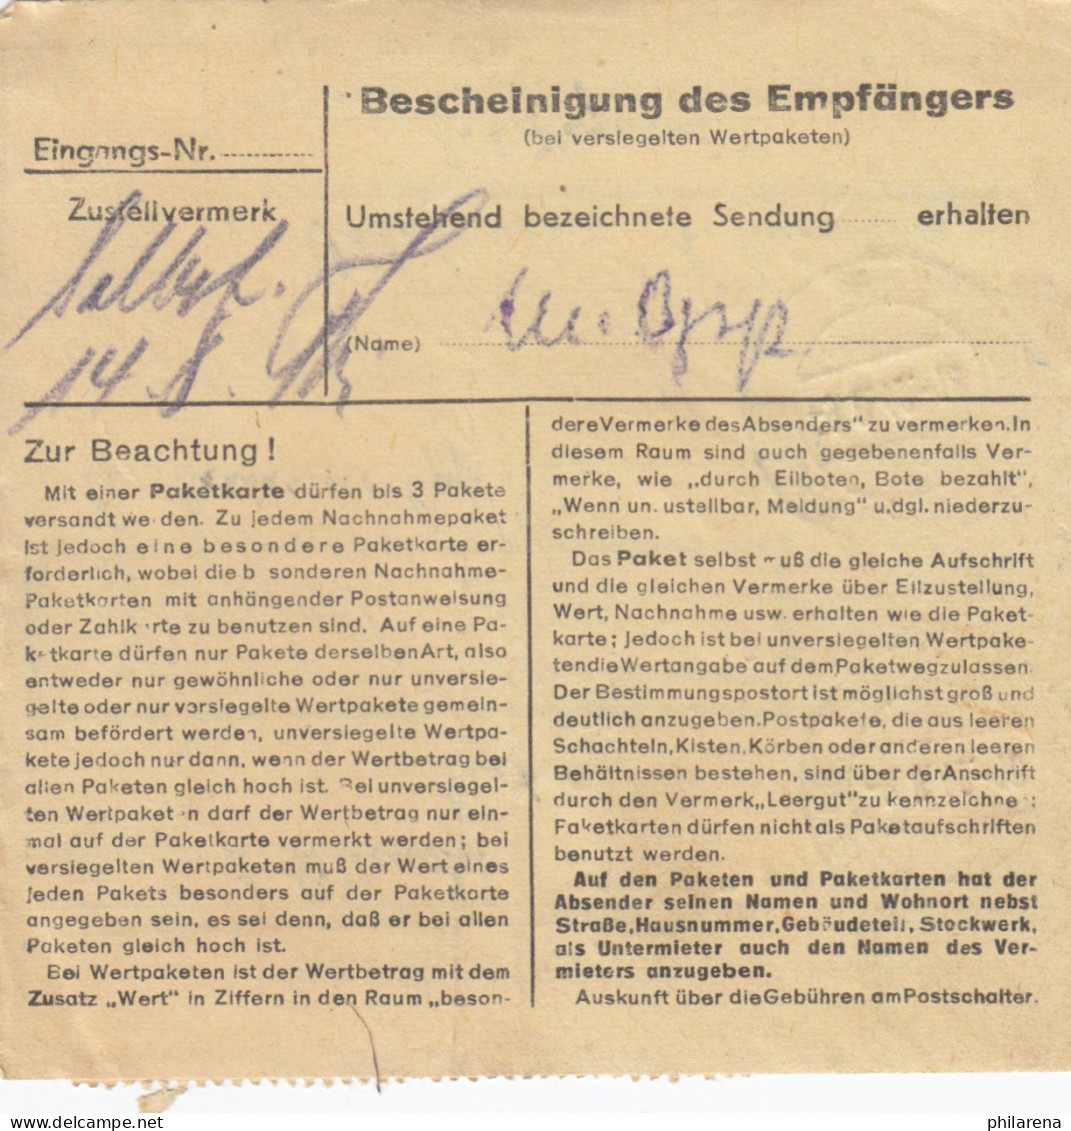 BiZone Paketkarte 1948: Graben Kr. Karlsruhe Nach Ottobrunn - Brieven En Documenten